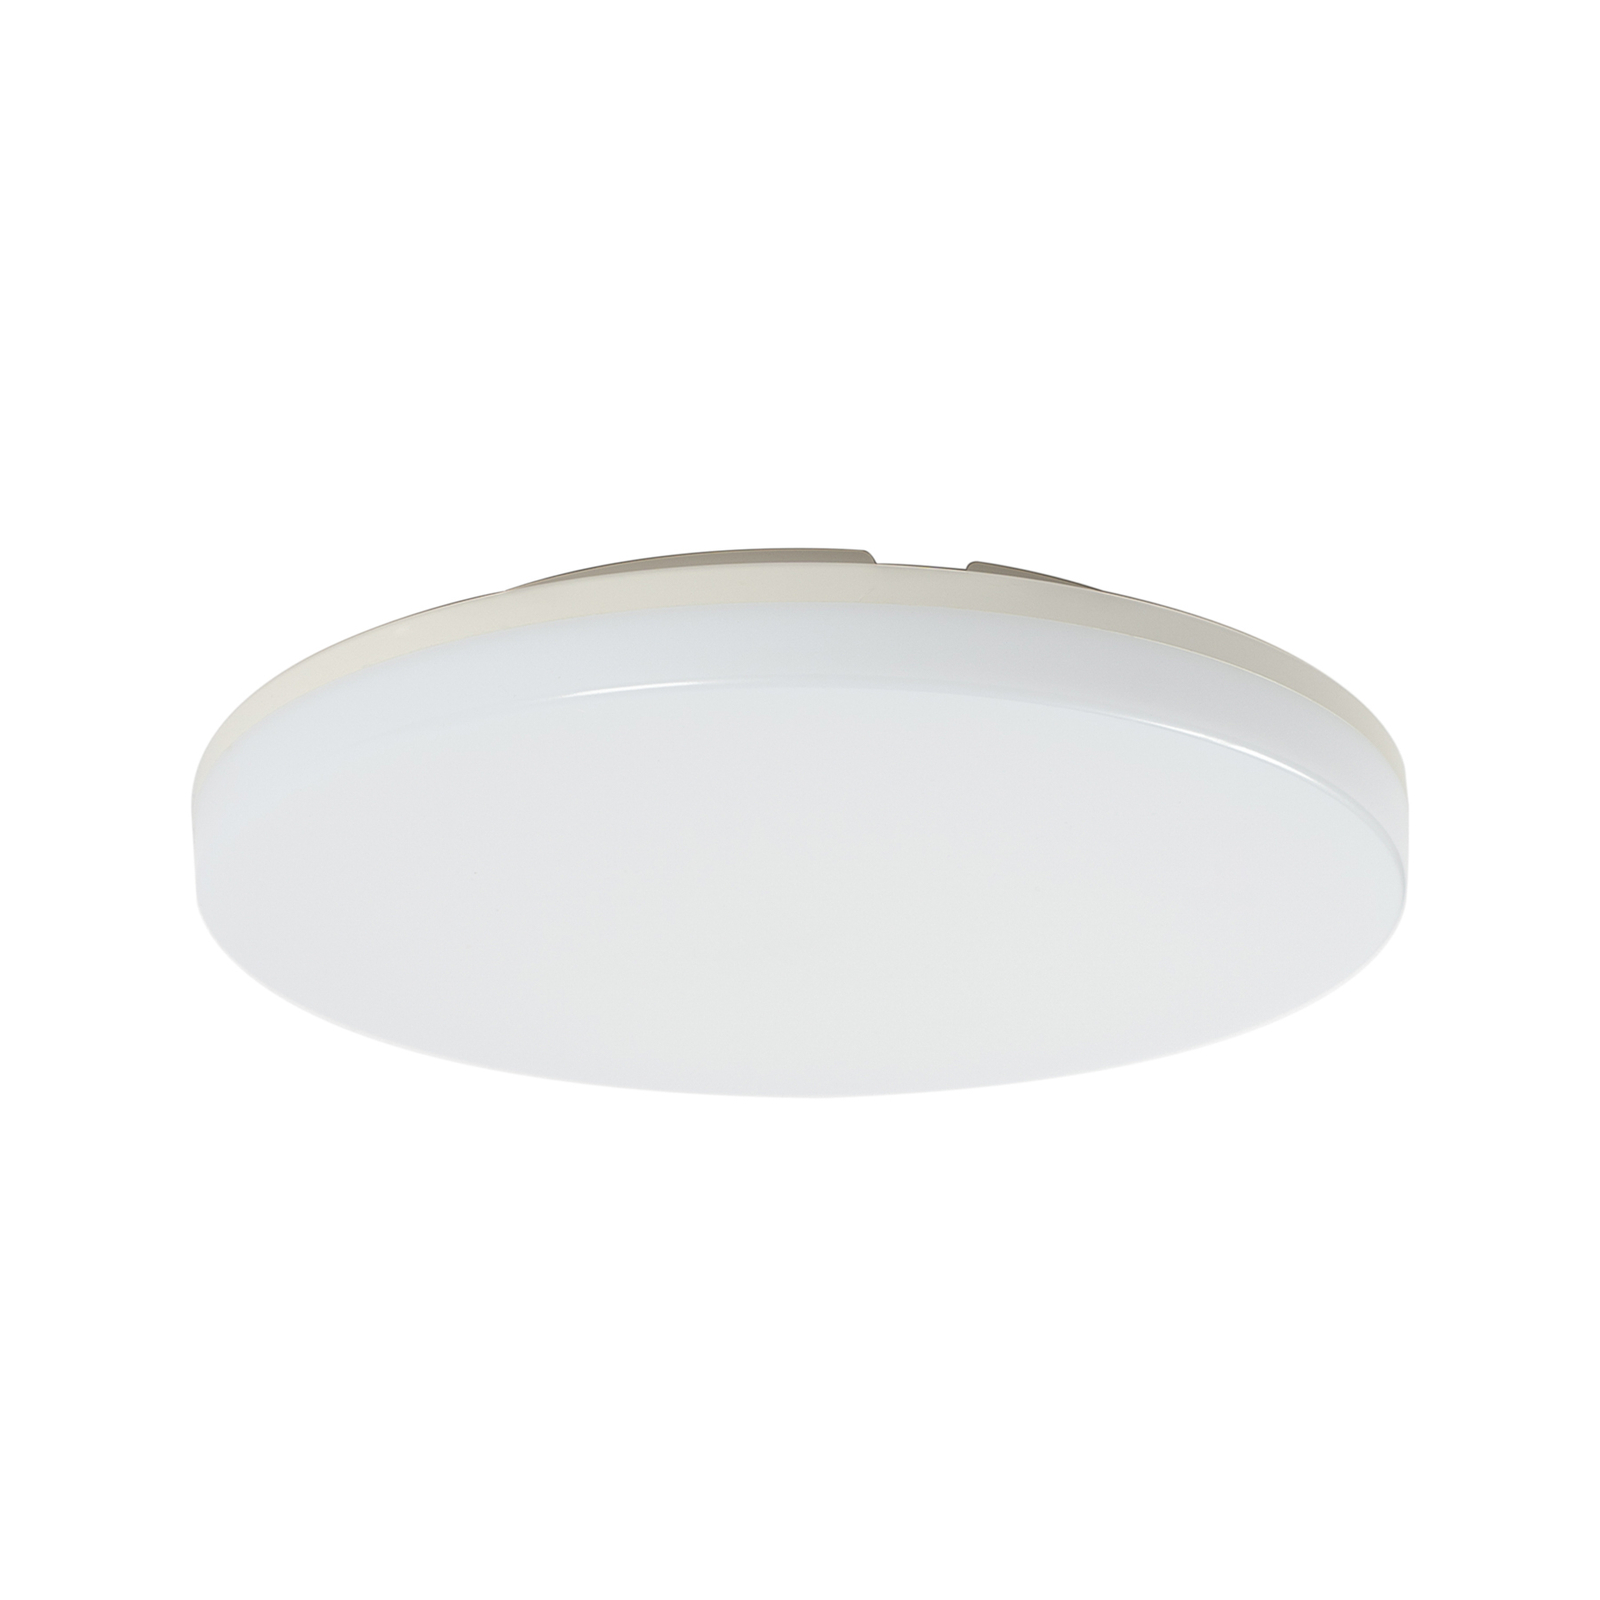 Prios Artin LED stropna svetilka, senzorska, okrogla, 28 cm